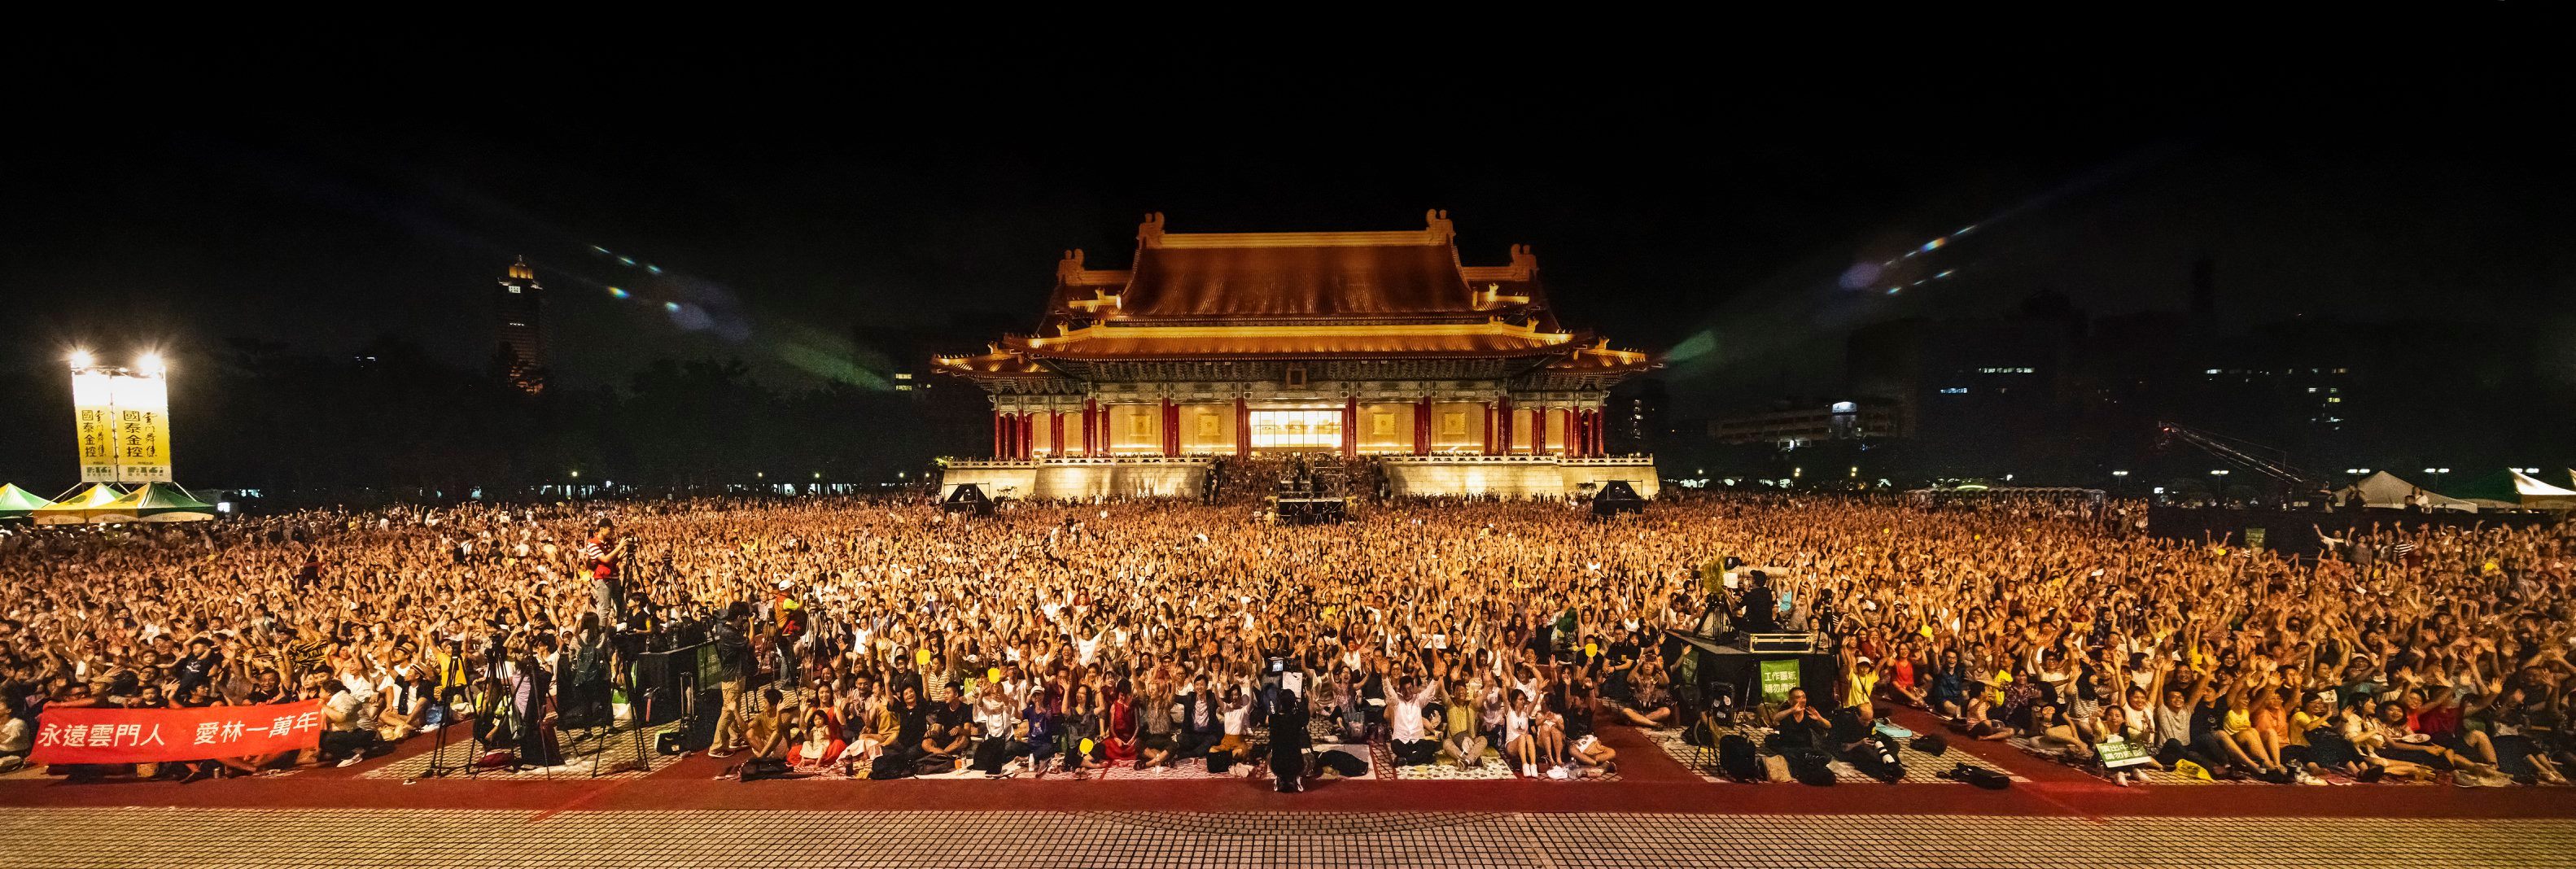 林懷民與雲門近五萬觀眾壯闊場景！紐約時報全版報導「在台灣，一個舞團的薪火相傳」(3).jpg